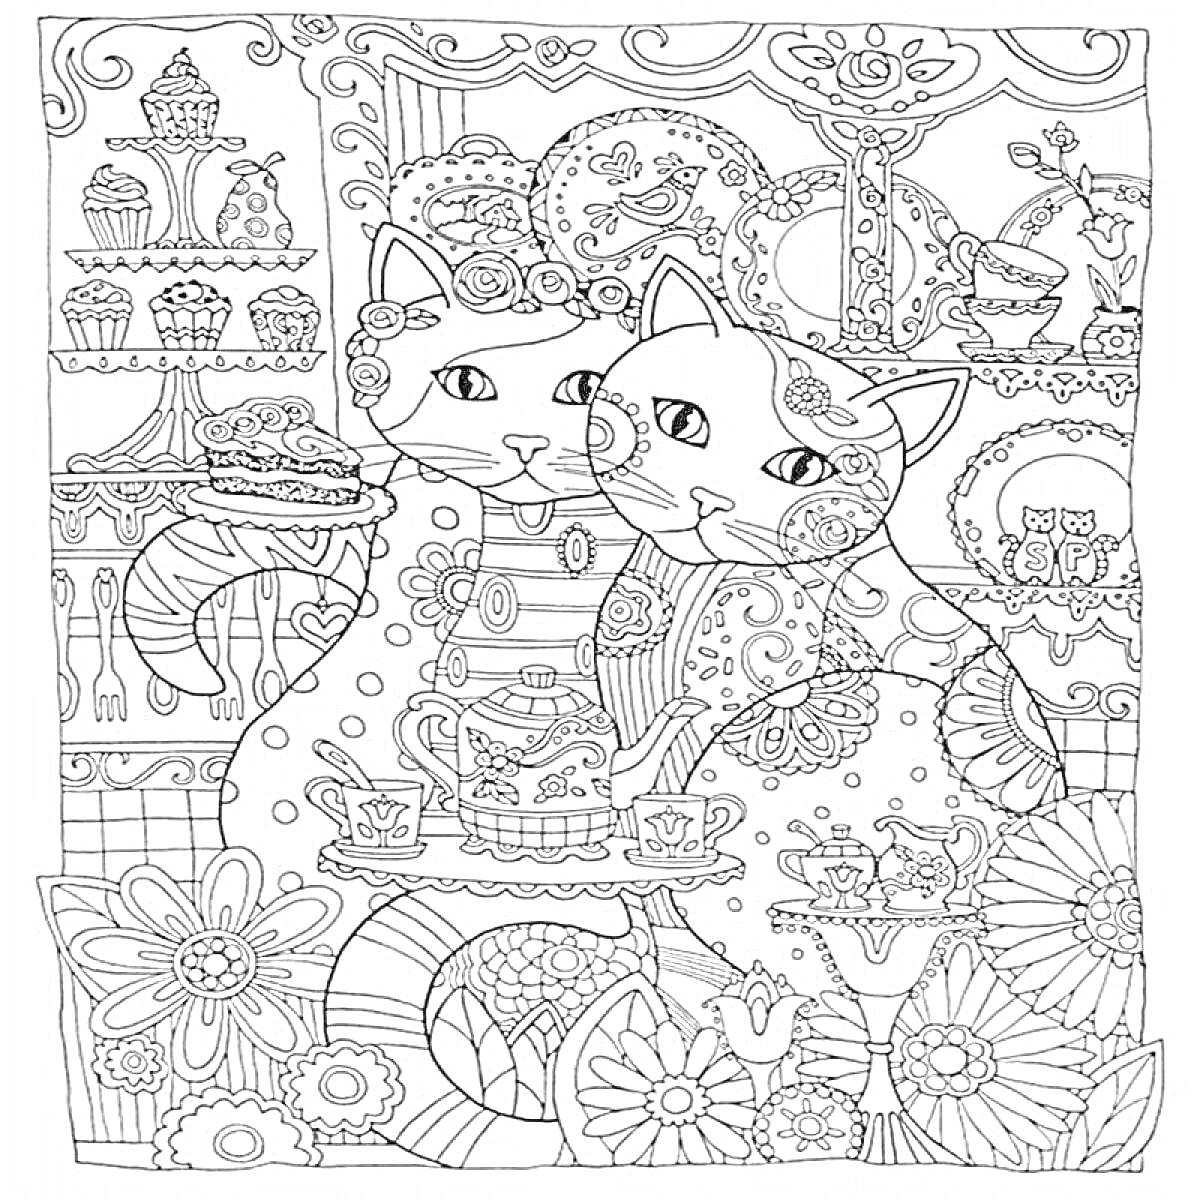 Раскраска Две кошки с пирожным, в окружении цветочного орнамента и чайного сервиза